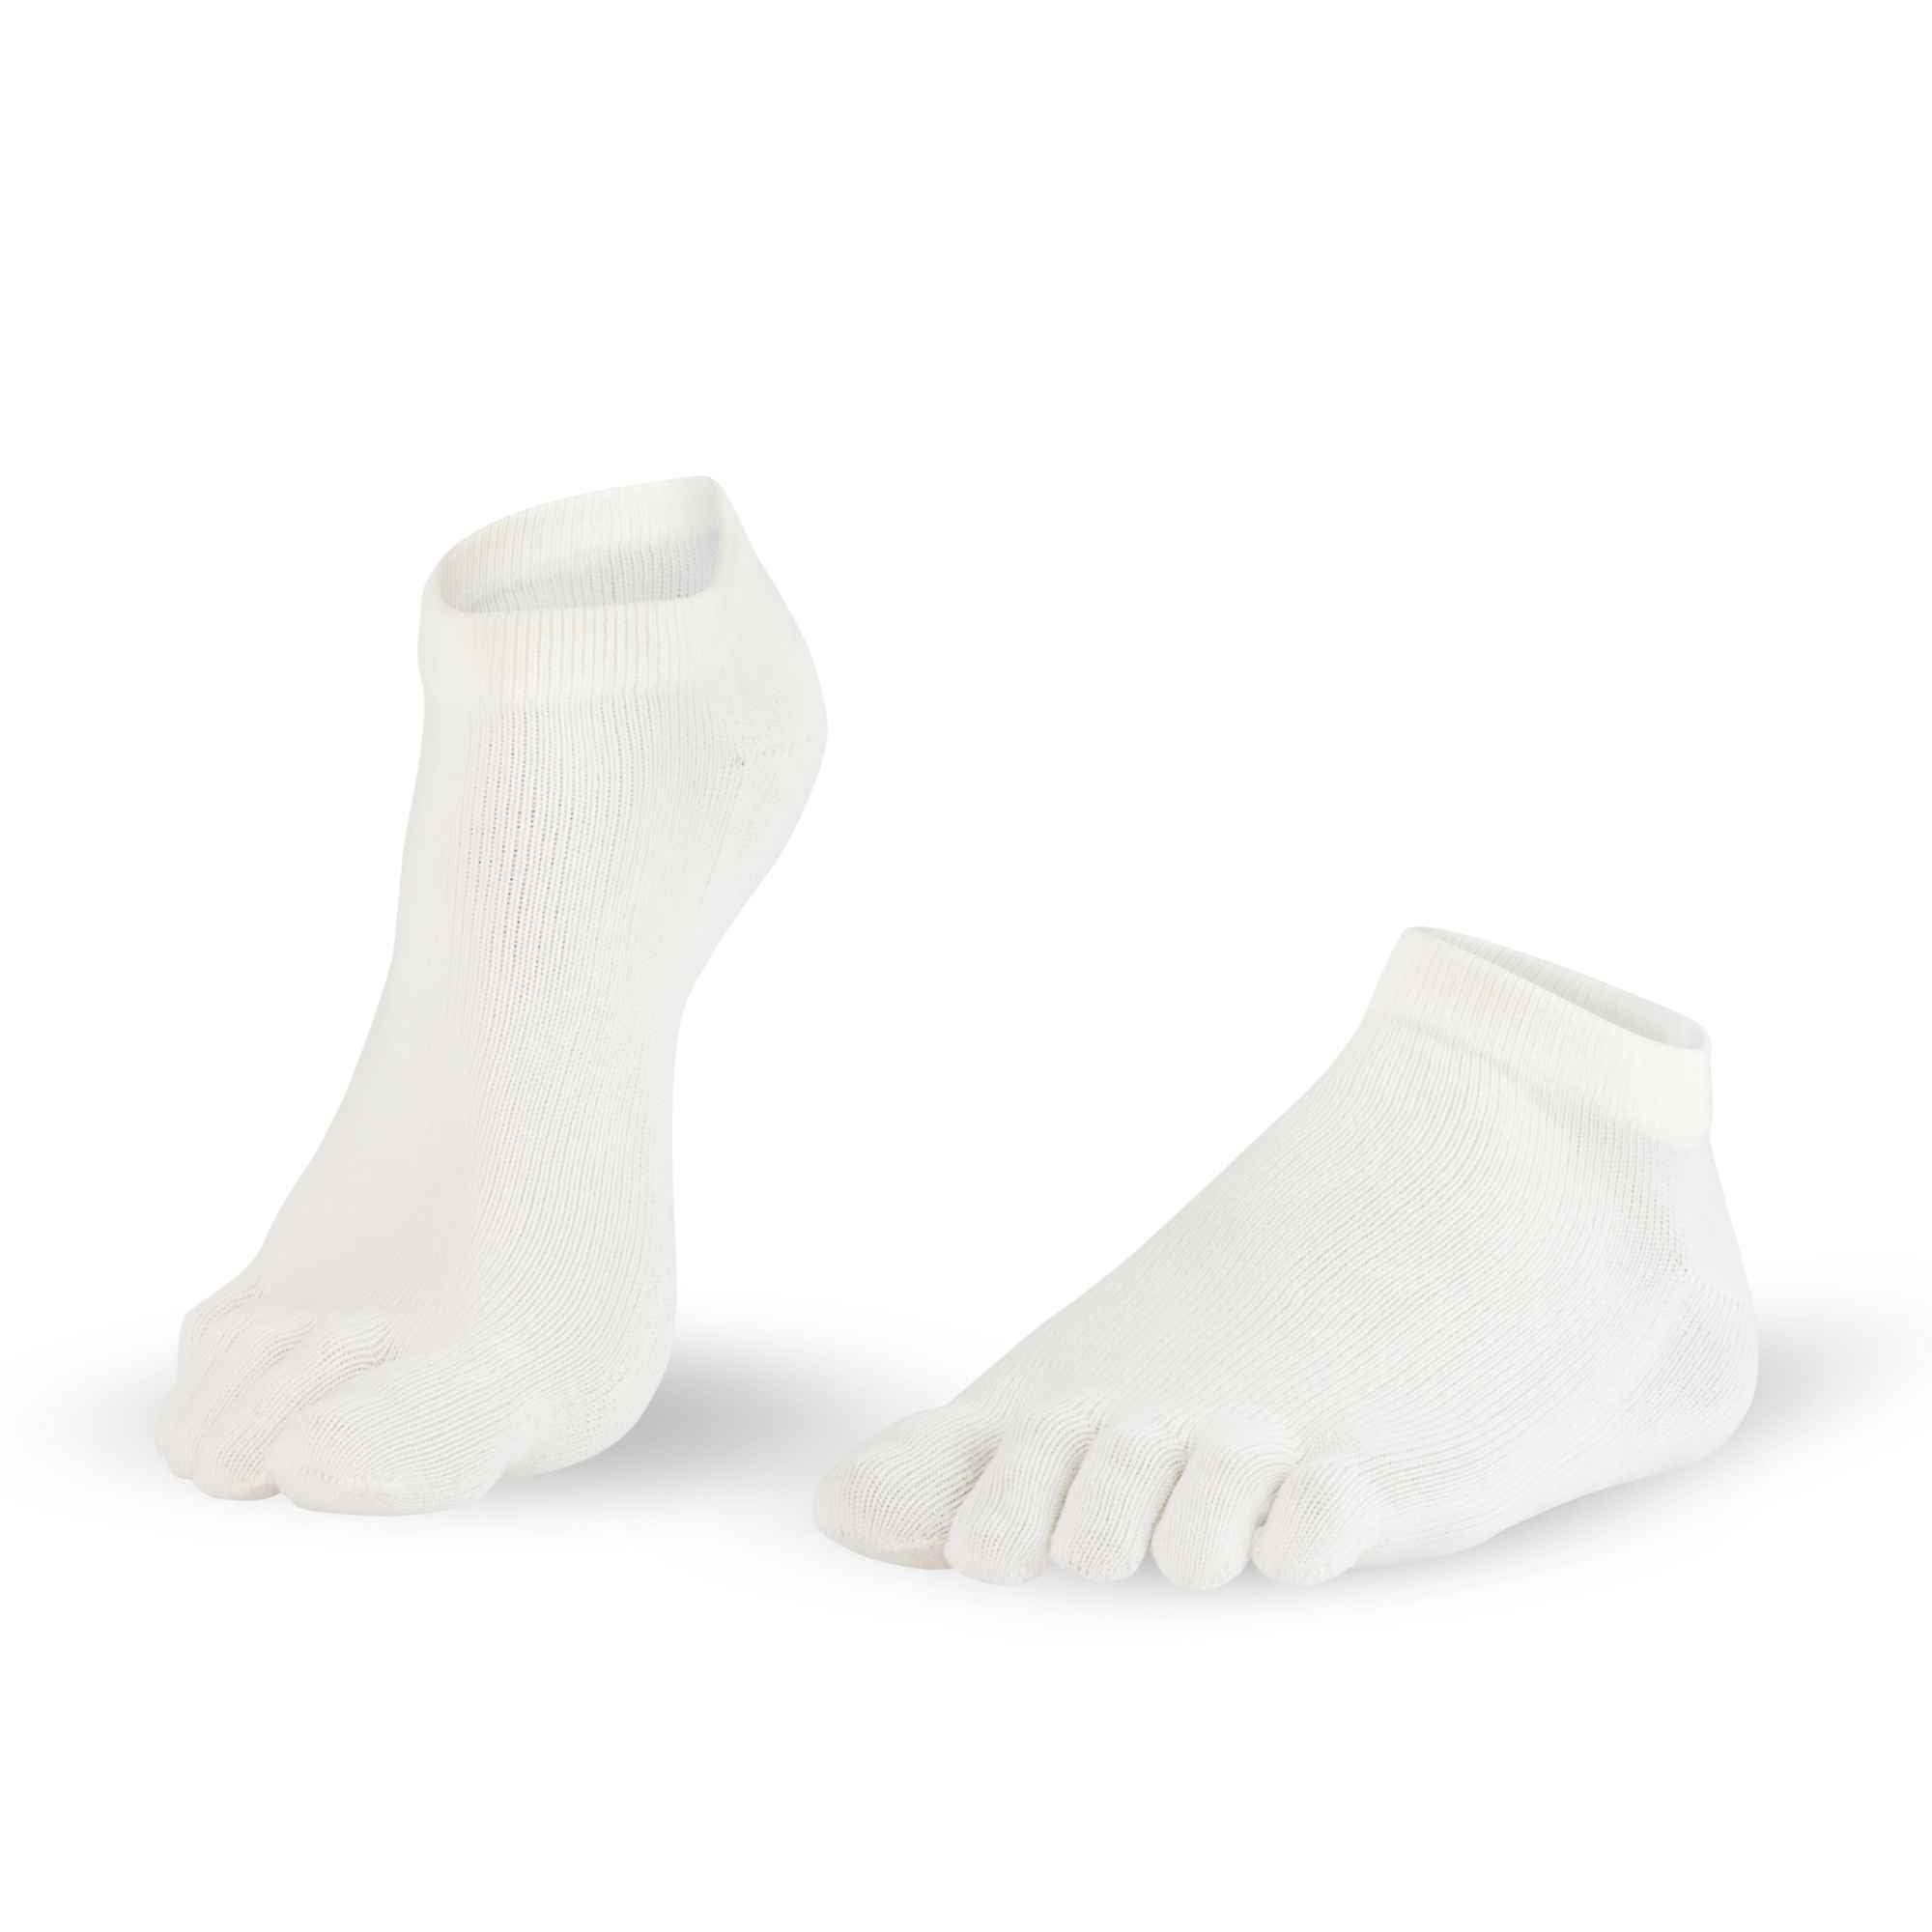 7-Dr-Foot-Silver-Protect-Sneaker Calcetines para los dedos blanco hombre mujer plata fibra